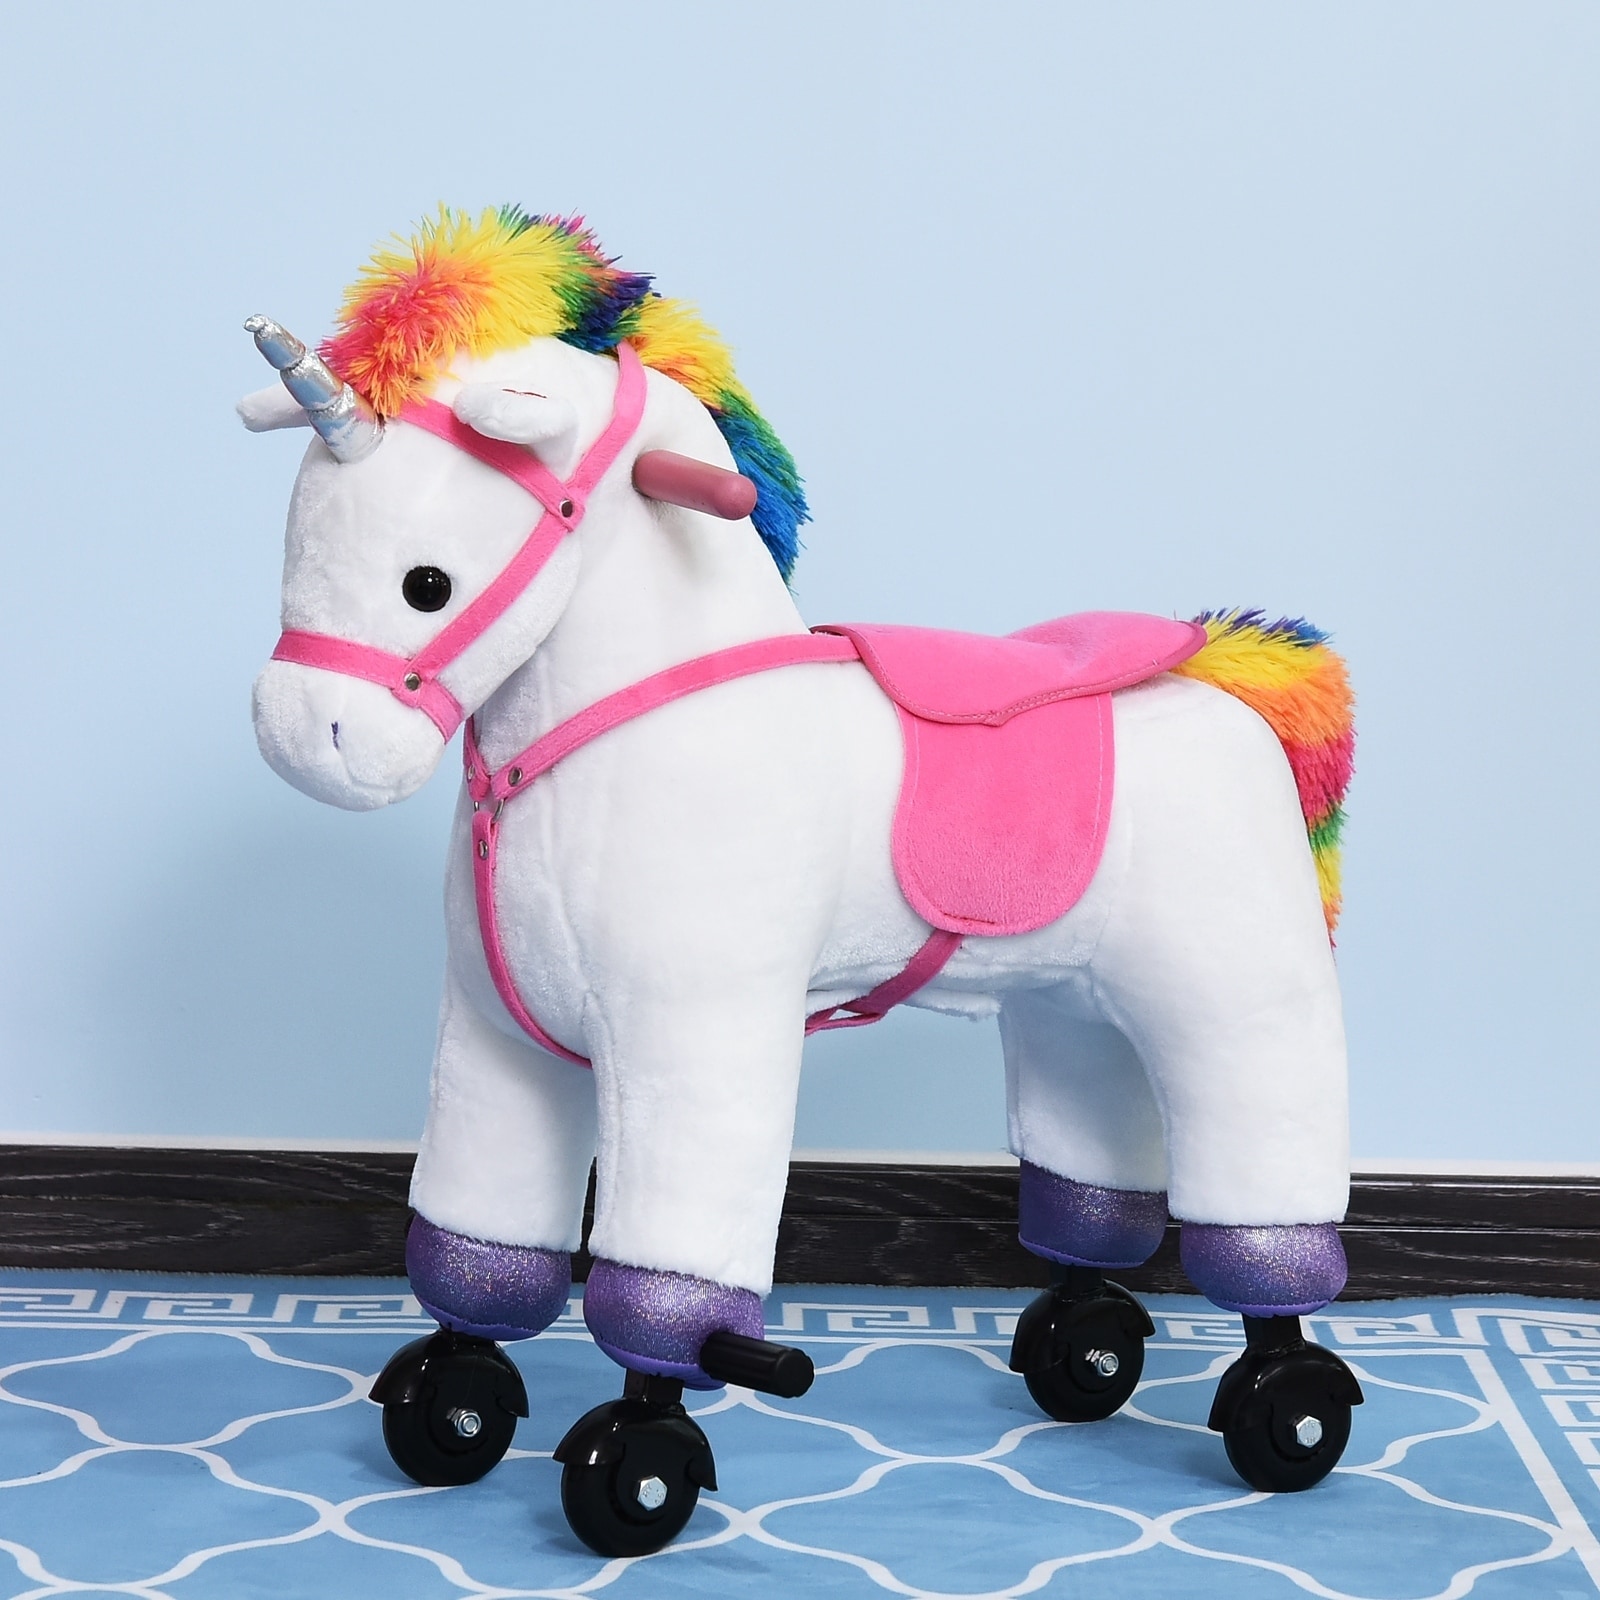 walking unicorn toy ride on